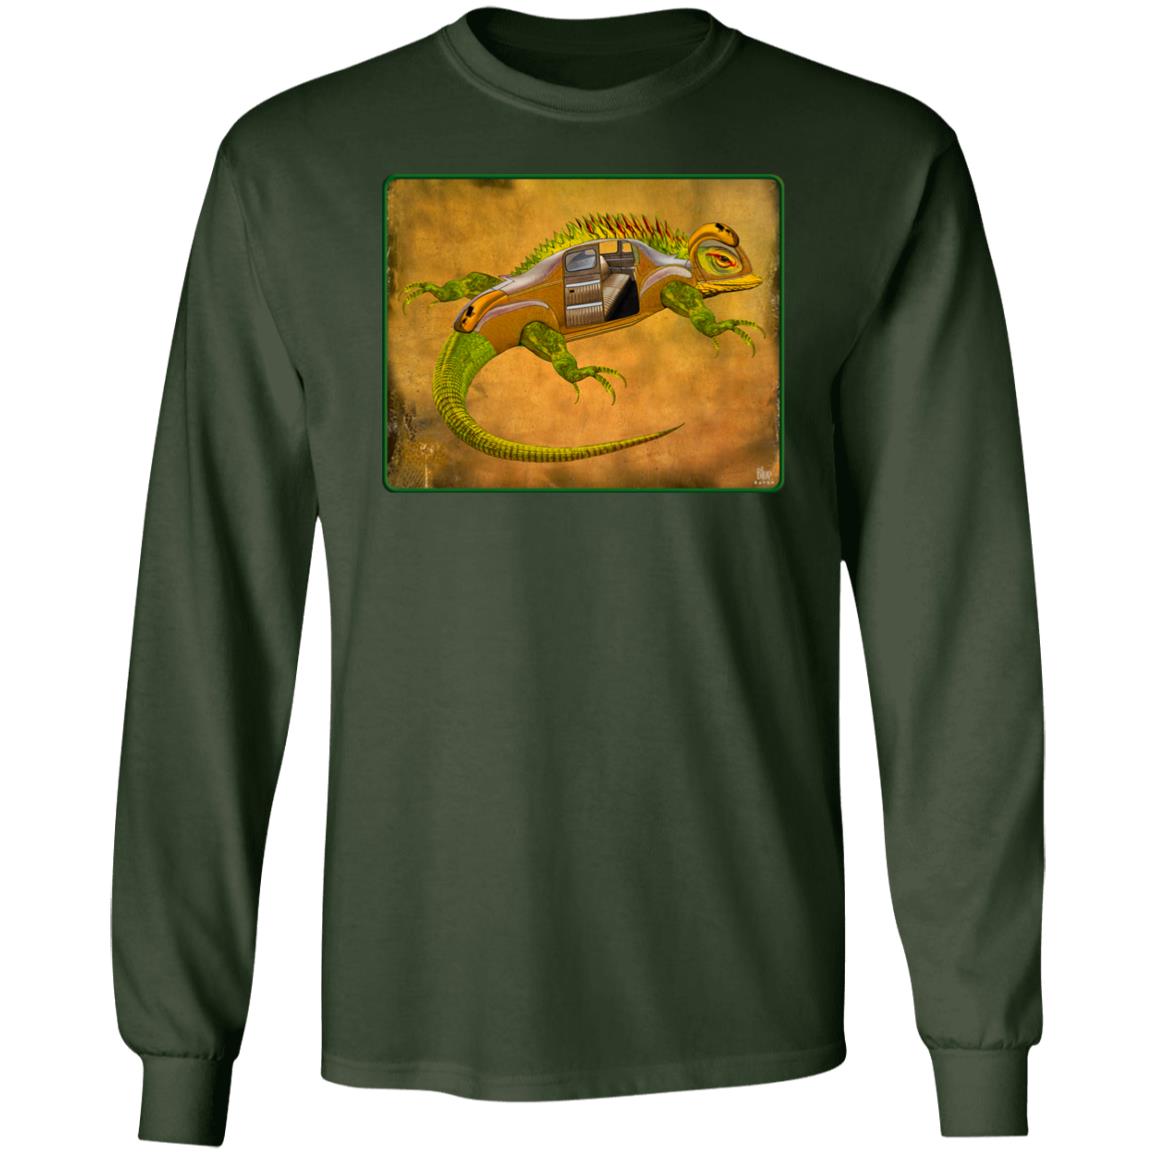 Uber Lizard - Green - Men's Long Sleeve T-Shirt